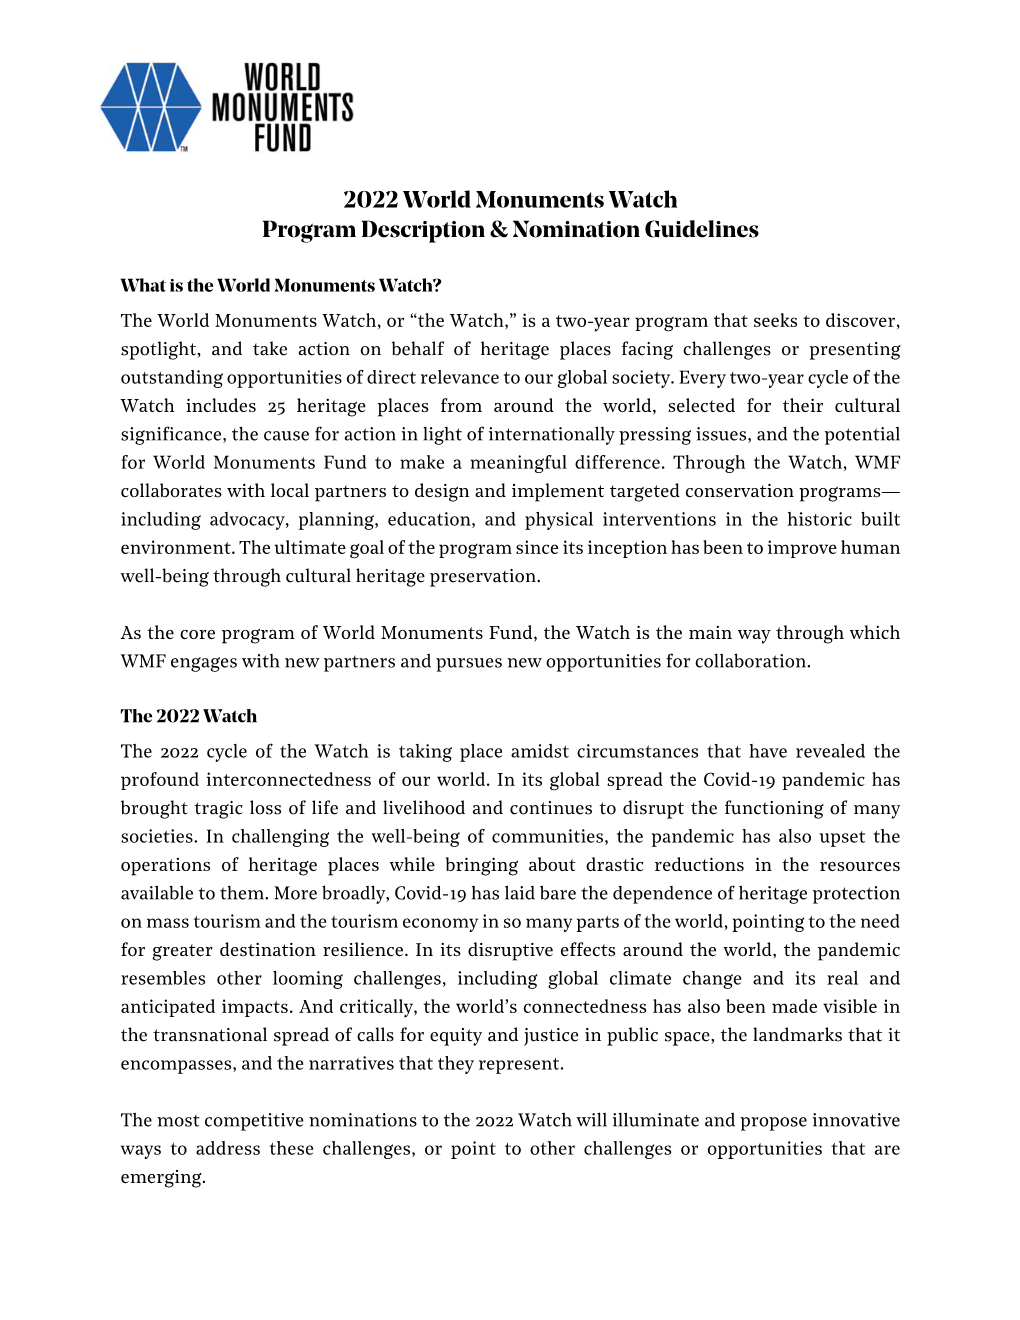 2022 World Monuments Watch Program Description & Nomination